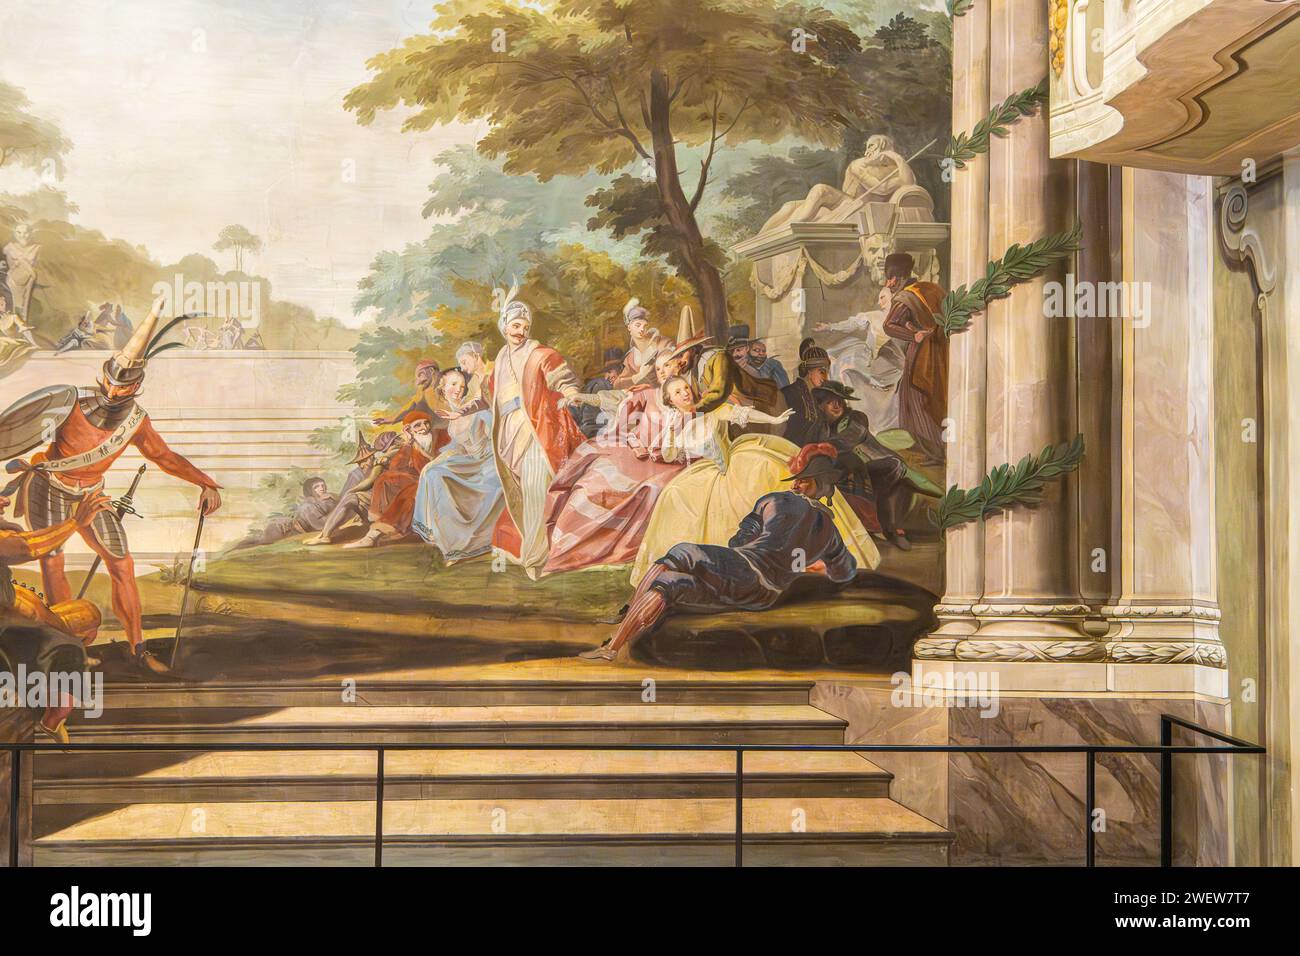 Rokoko-Fresken des italienischen Malers Karl Henrici (1737-1823) im Schloss Menz im historischen Zentrum von Bozen, Südtirol, Trentino Südtirol, Italien Stockfoto